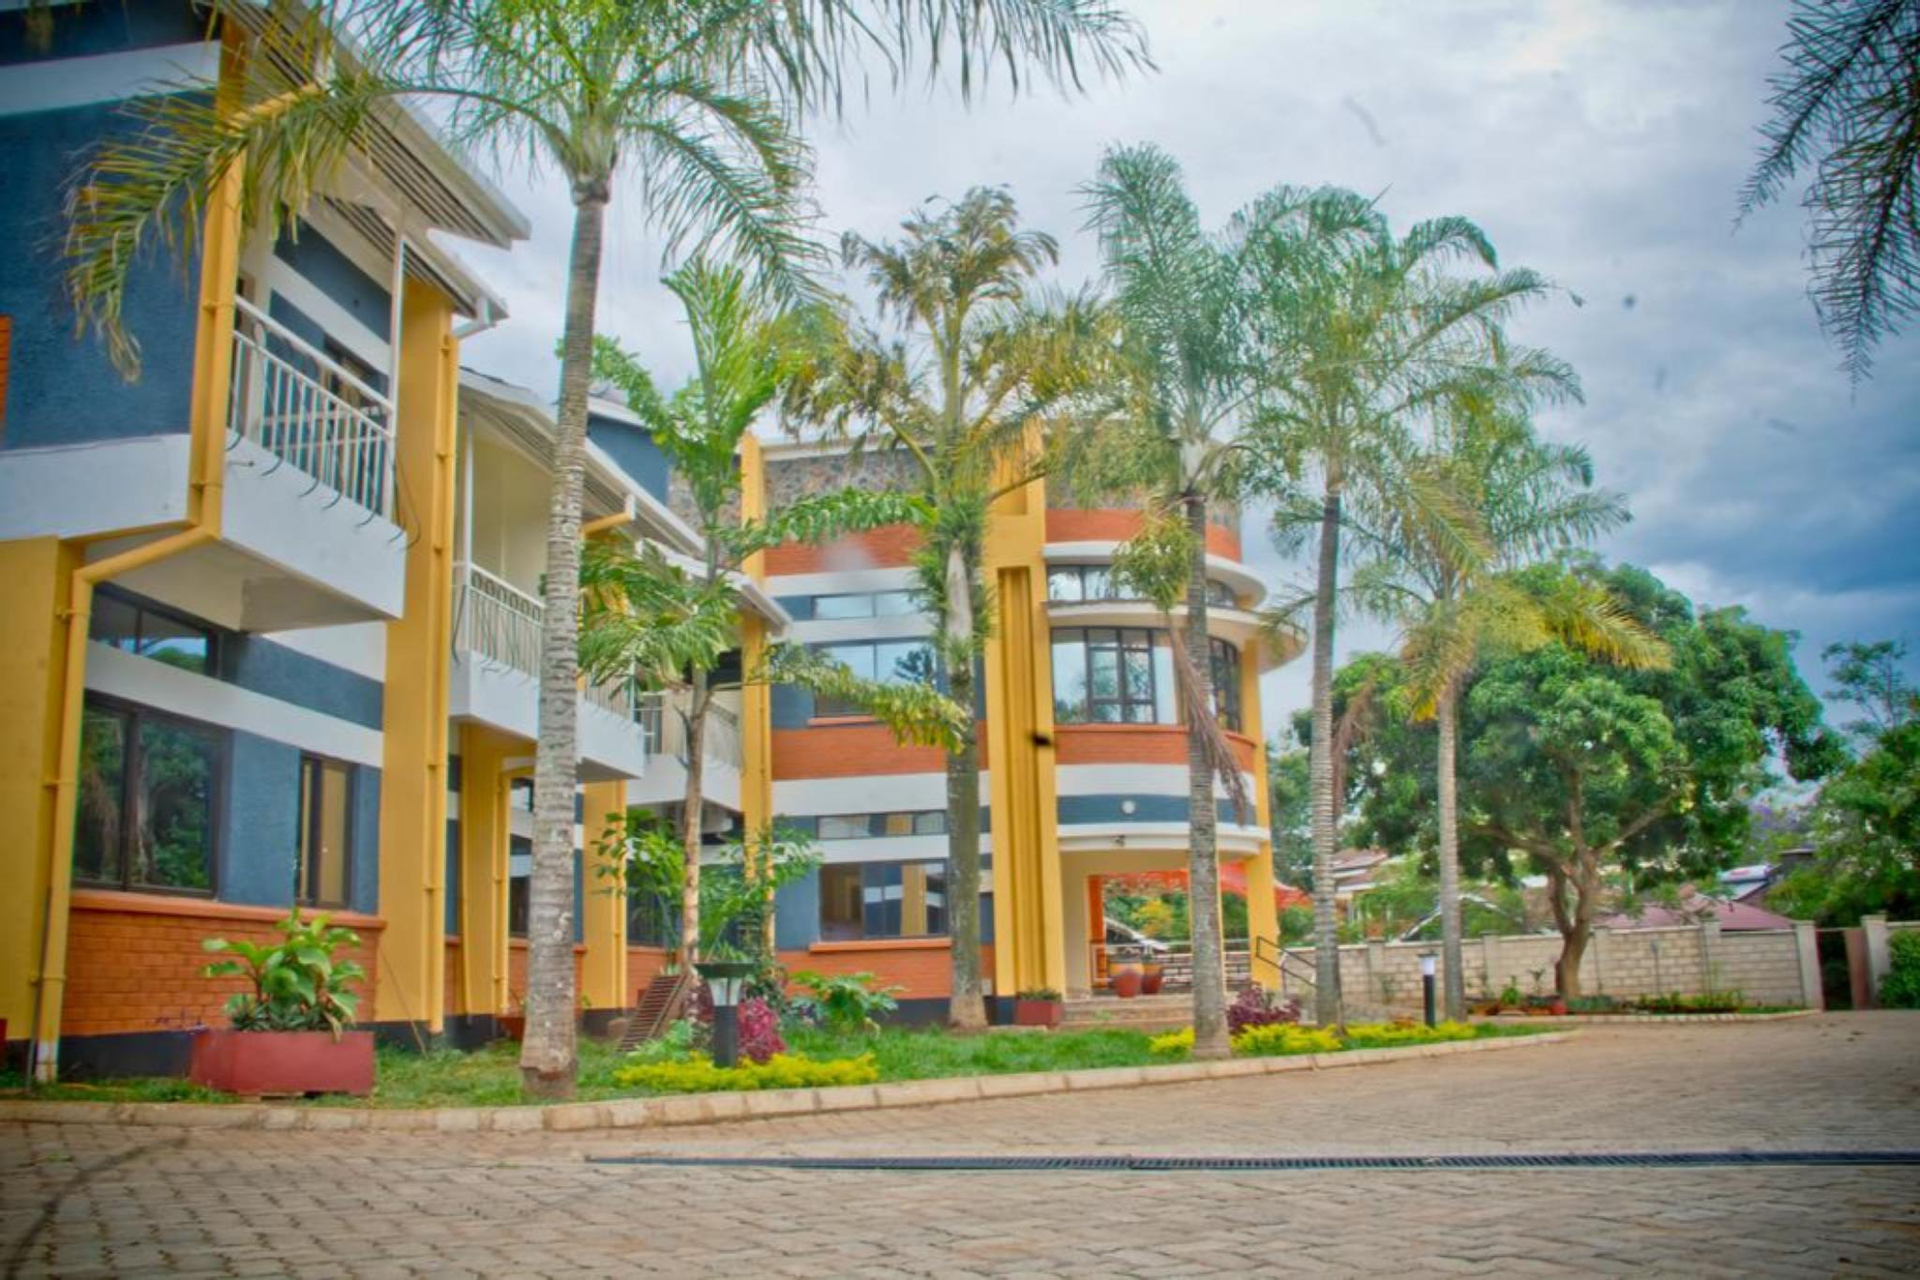 Exterior & Views 4, Mills View Hotel Kisumu, Kisumu West